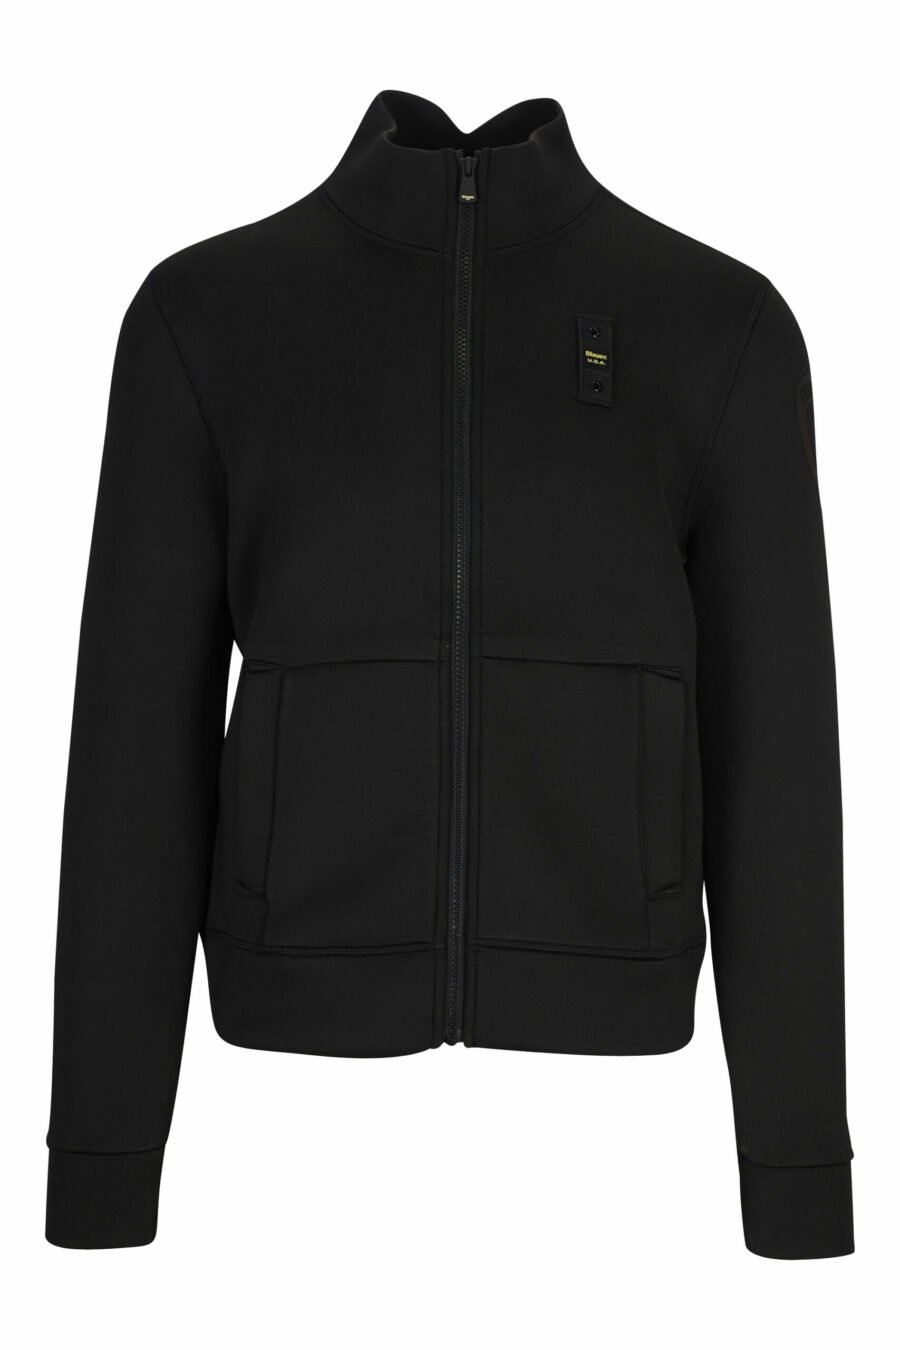 Schwarzes Sweatshirt mit Reißverschluss und einfarbigem Logoaufnäher - 8058610660024 skaliert